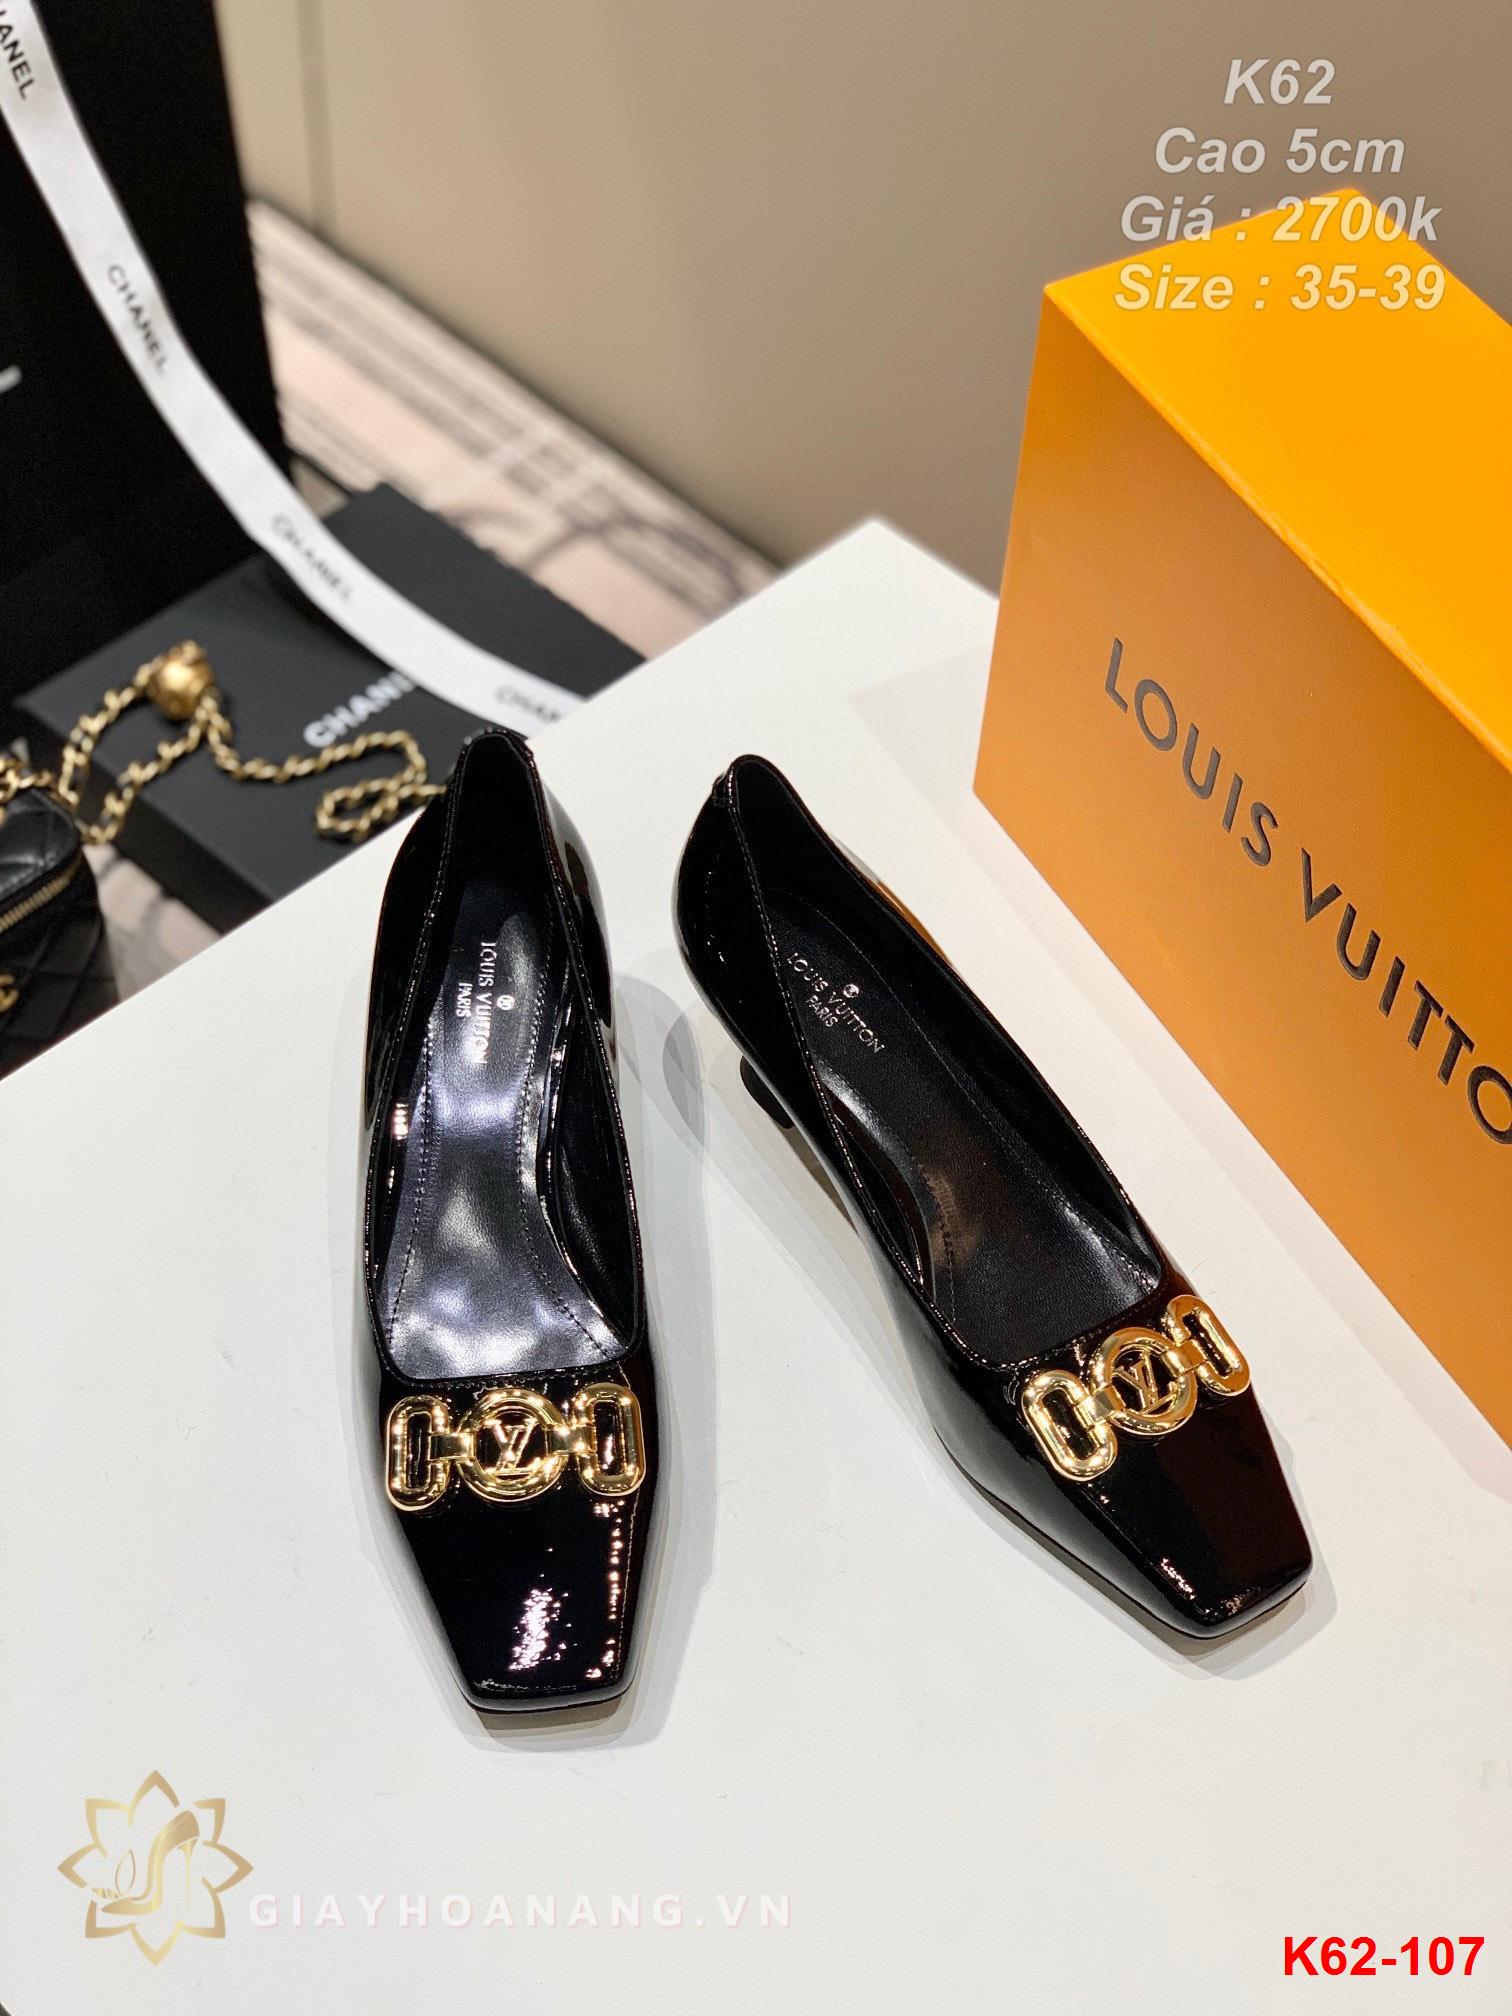 K62-107 Louis Vuitton giày cao 5cm siêu cấp